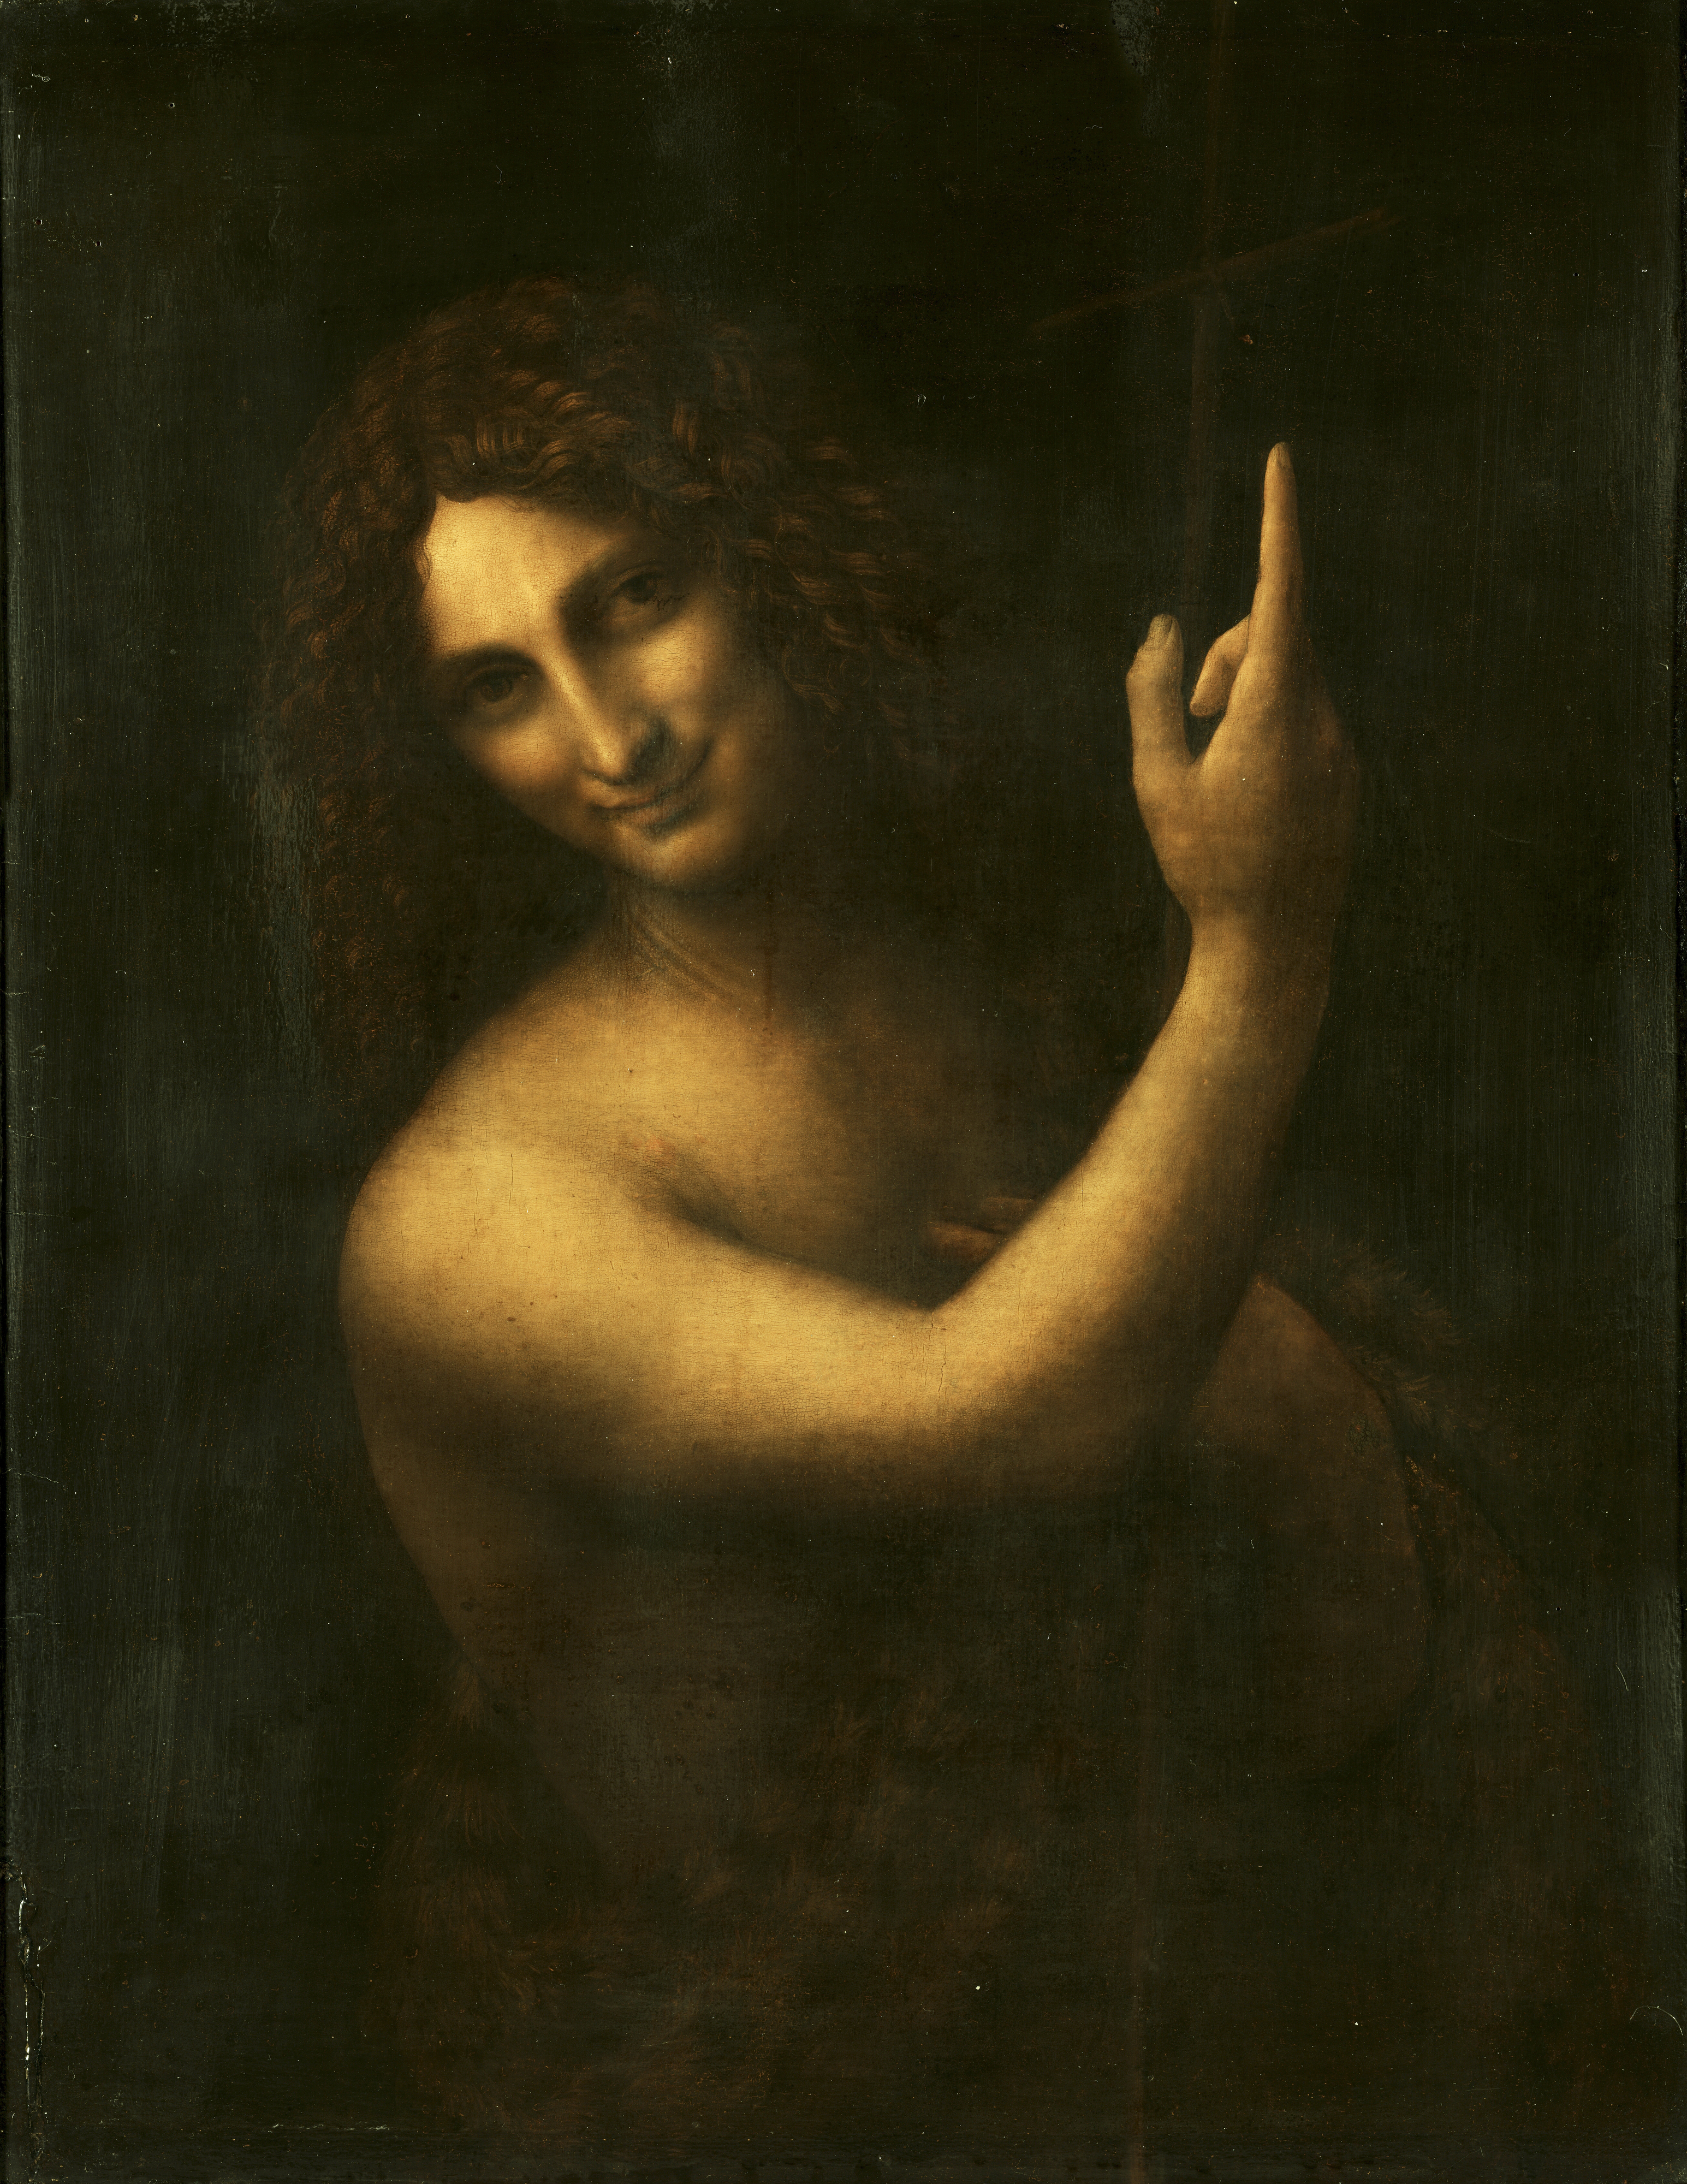 레오나르도 다빈치, 세례자 성 요한, 1513. 파리 루브르박물관 소장품.